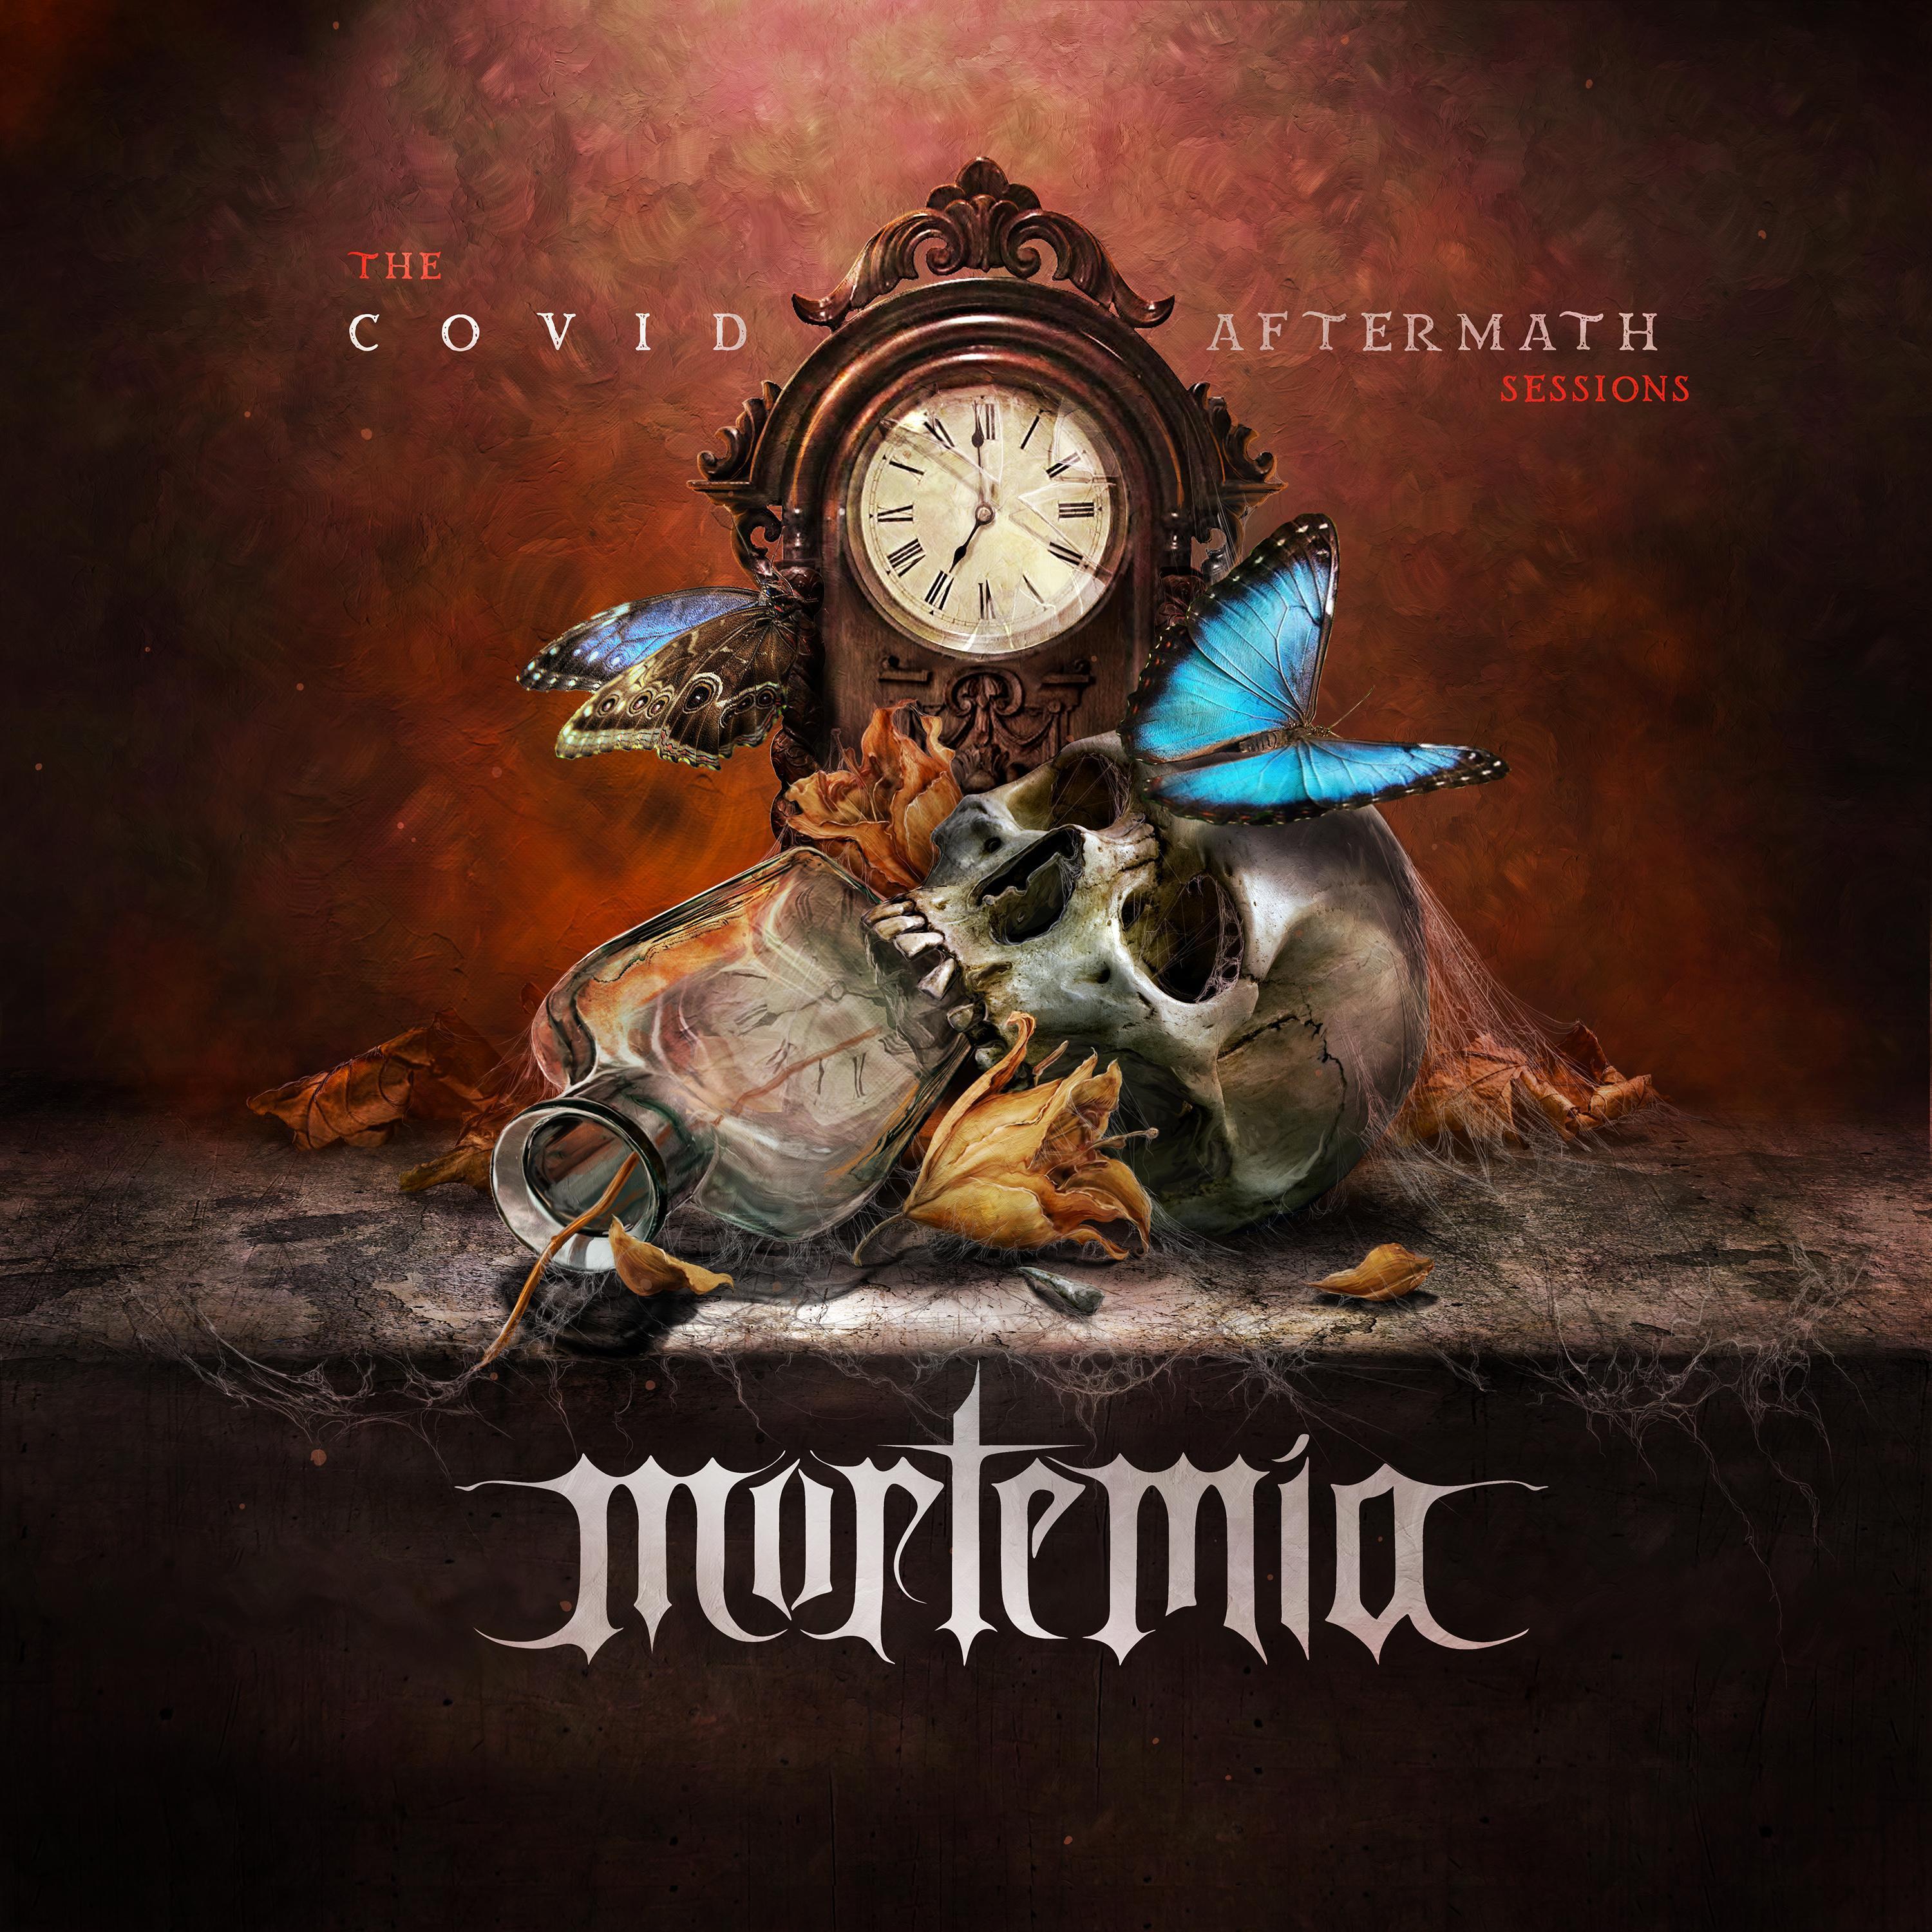 Mortemia - Samurai (feat. Marina La Torraca)